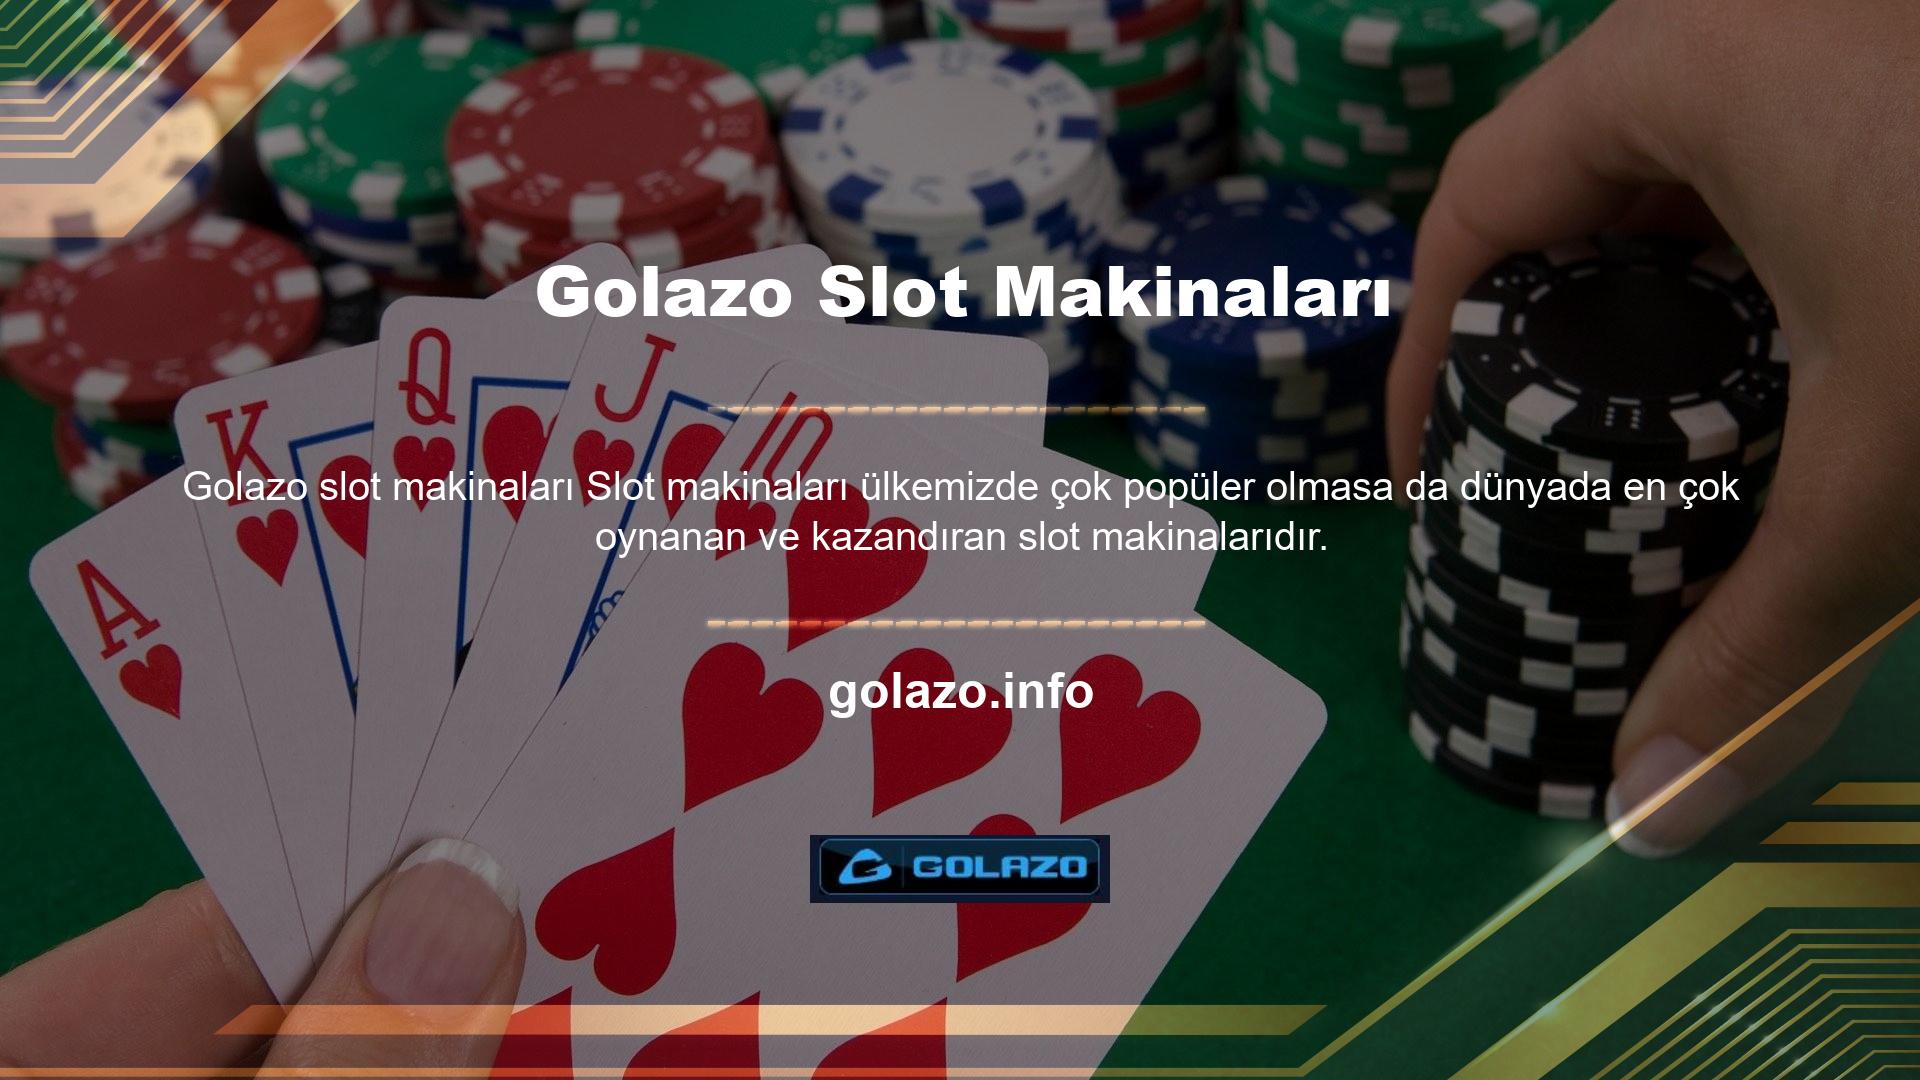 Golazo, üyelere neredeyse tüm slot makine oyunlarını sunar